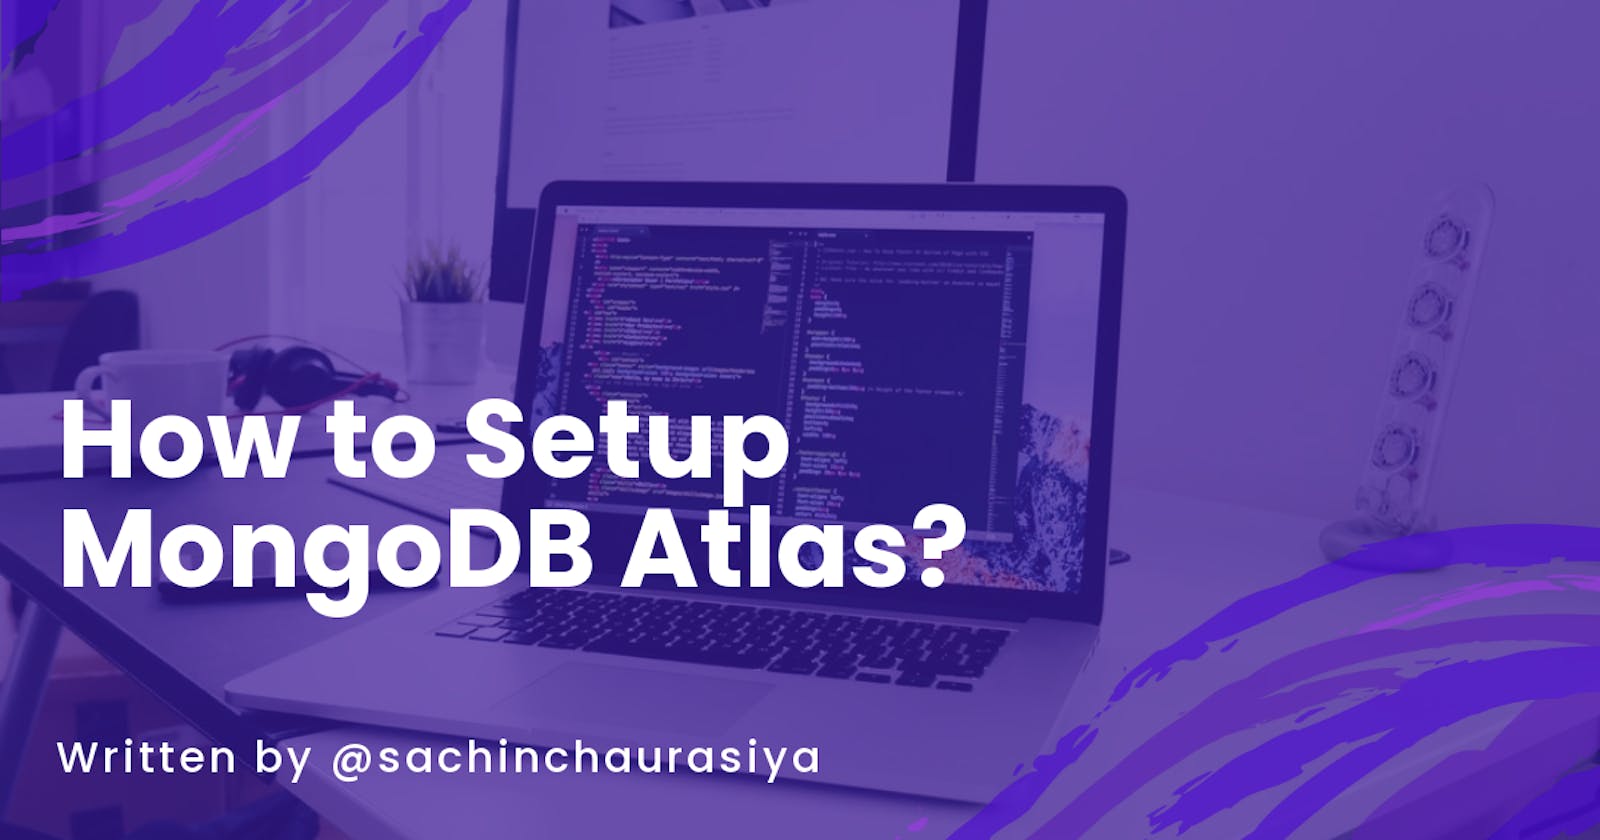 How to Setup MongoDB Atlas?